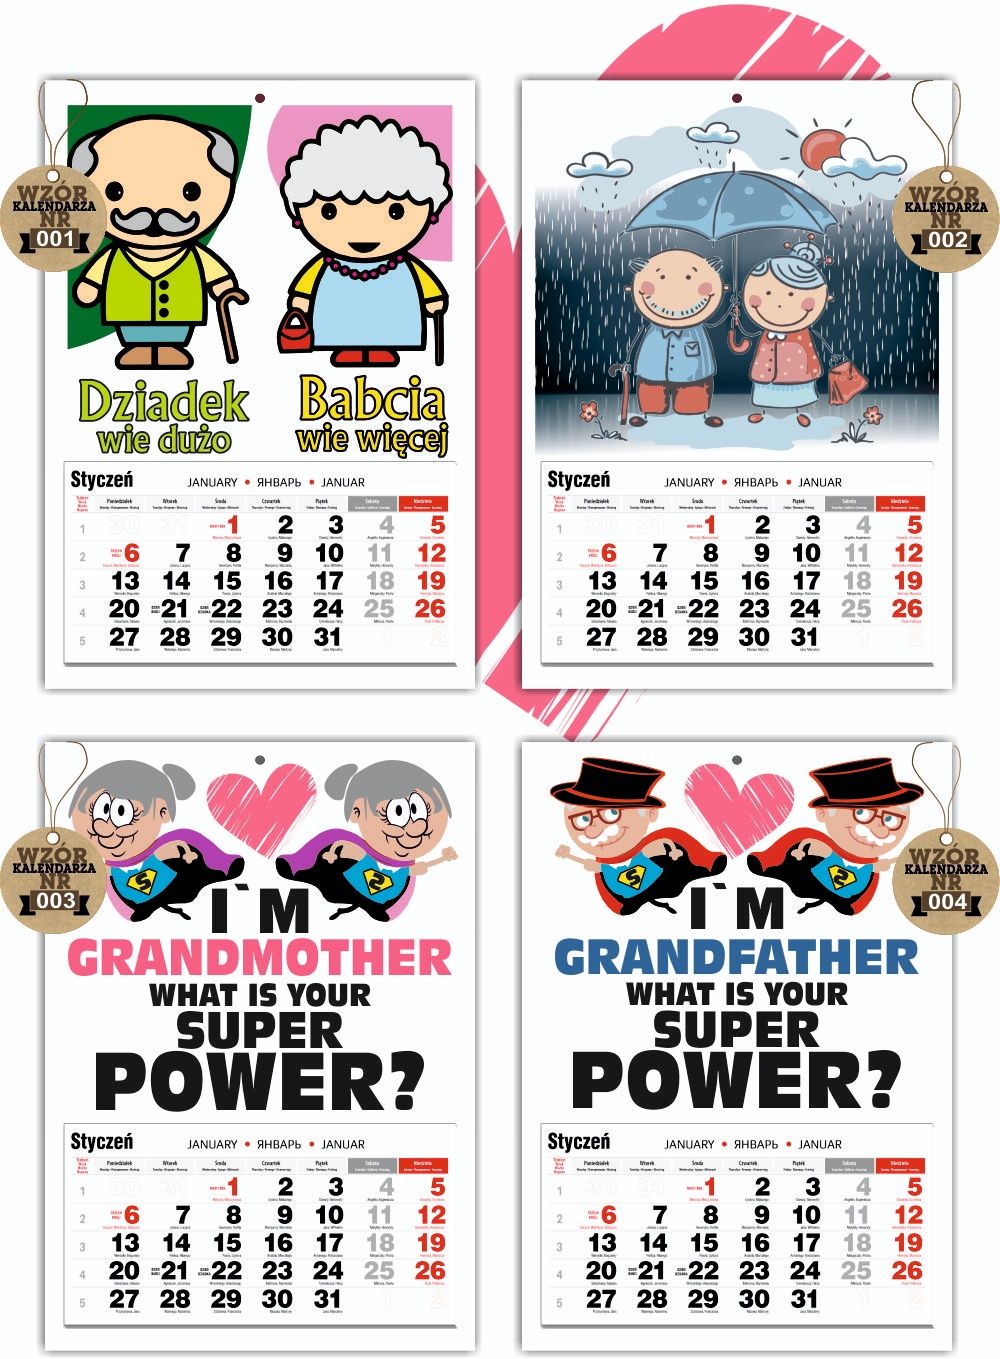 Kalendarz dla Babci i Dziadka 16wzorów A3 kolorowy 

kolorowy jednodzi